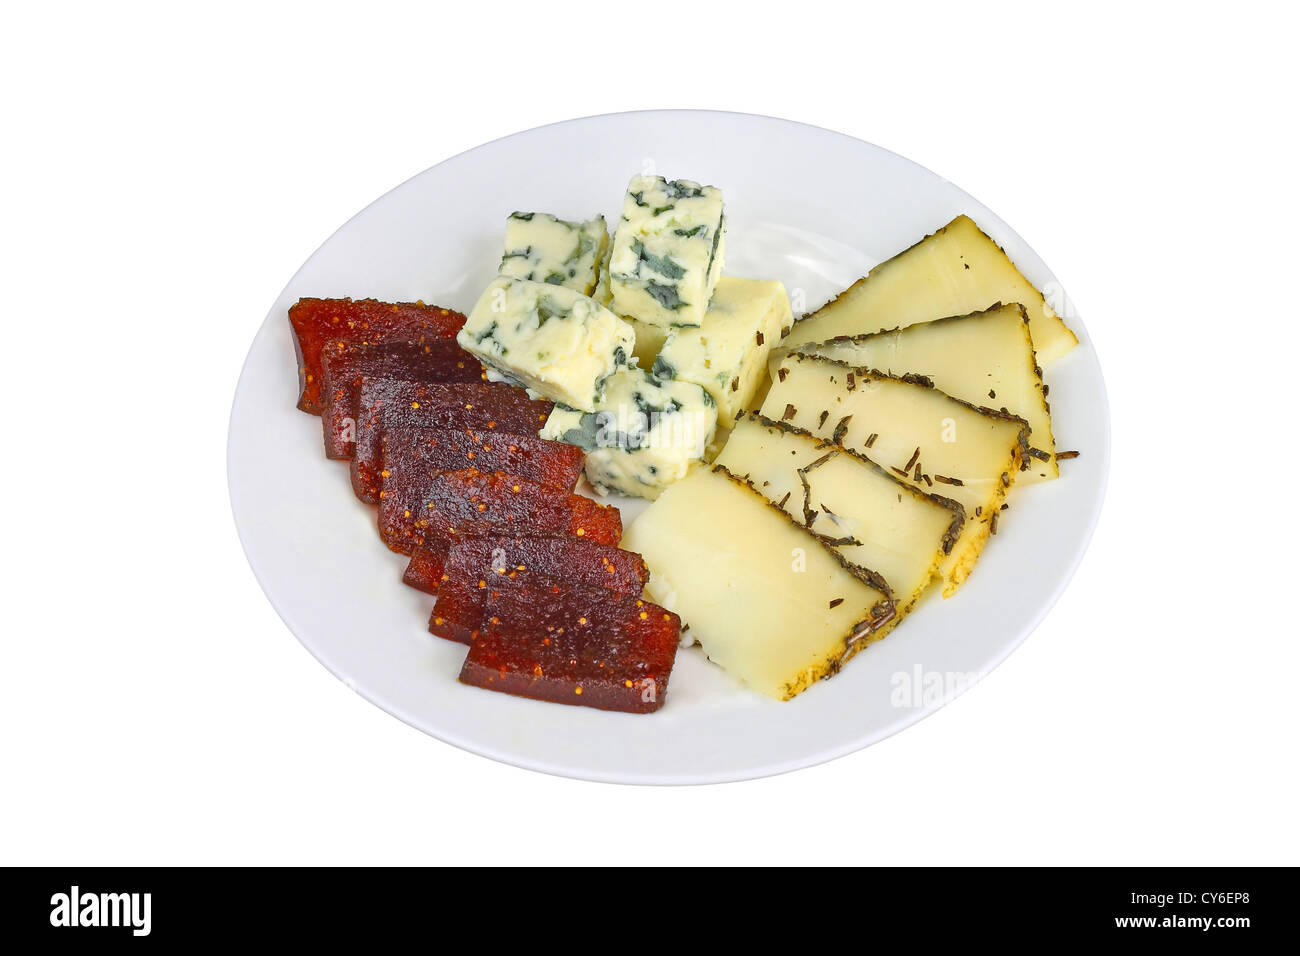 Fromage bleu et le fromage piquant avec confiture de figues tranches sur une assiette isolated on white Banque D'Images